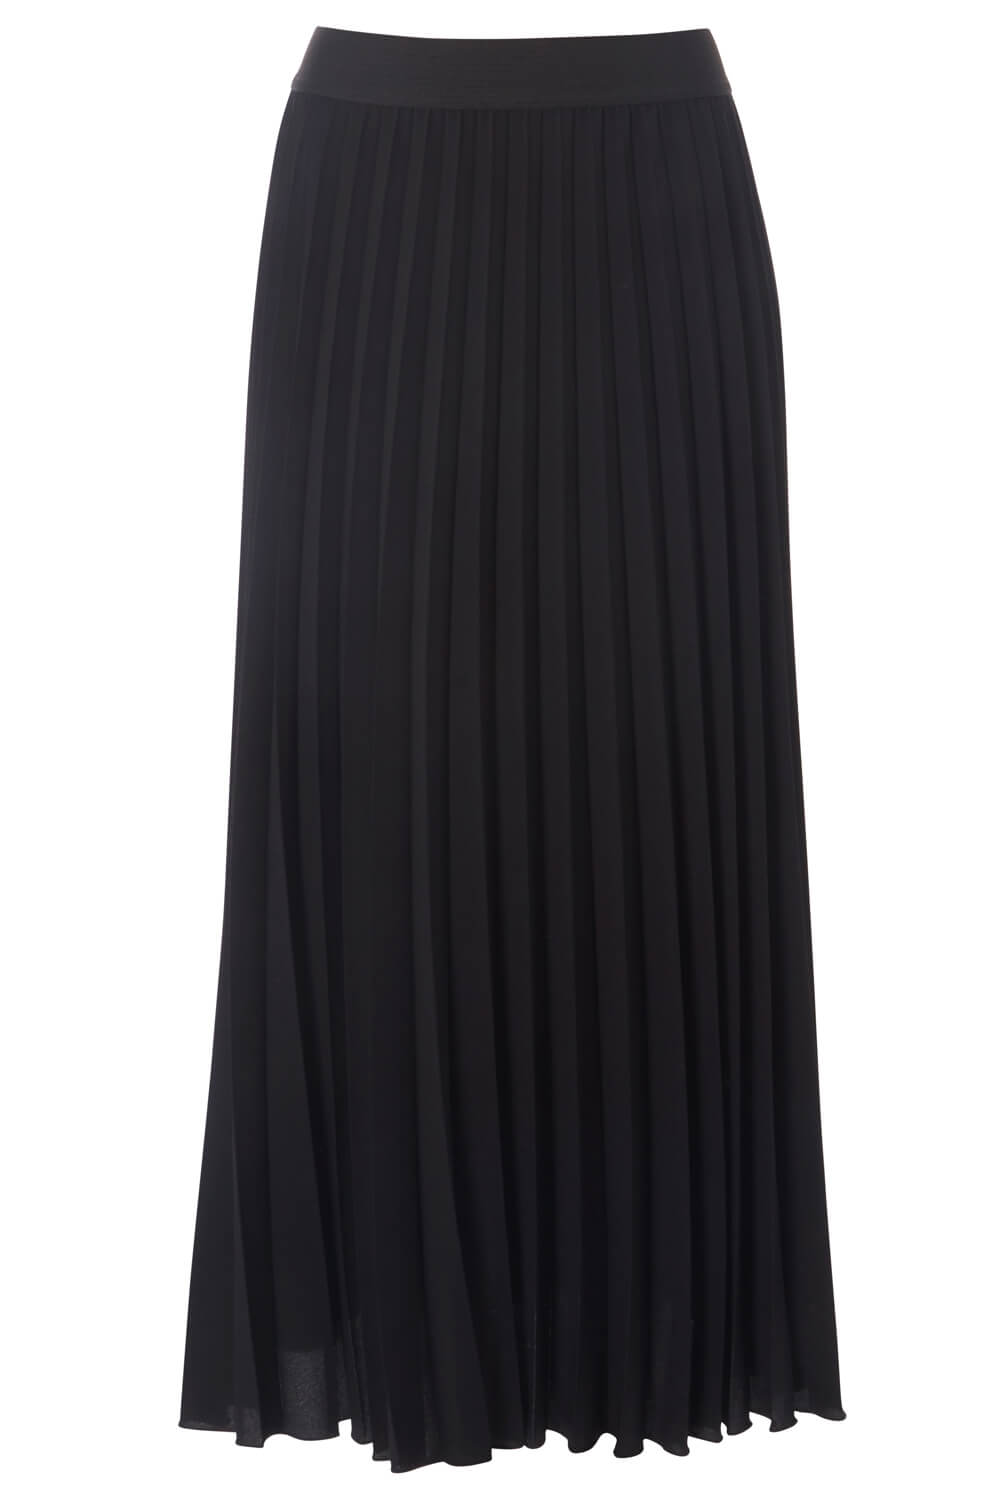 Black Pleated Maxi Skirt, Image 3 of 3